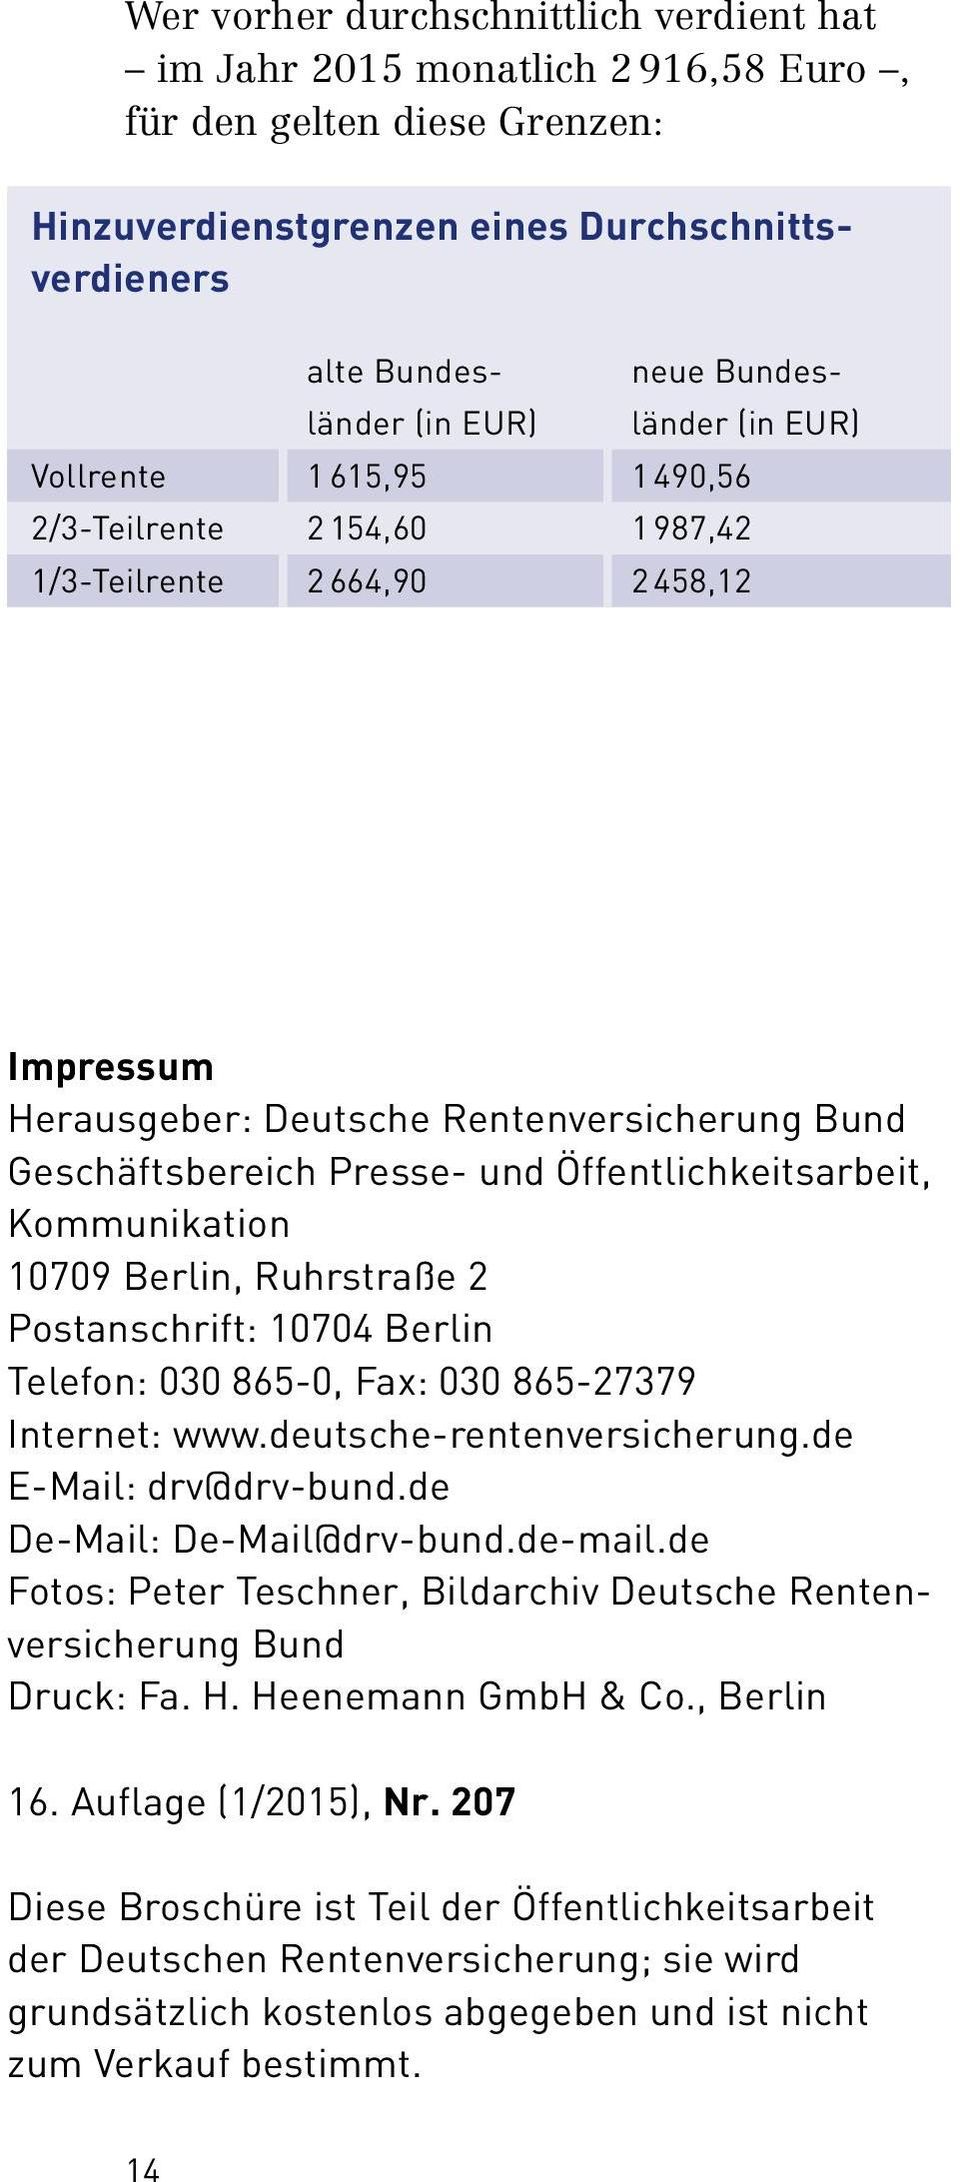 Kommunikation 10709 Berlin, Ruhrstraße 2 Postanschrift: 10704 Berlin Telefon: 030 865 0, Fax: 030 865 27379 Internet: www.deutsche rentenversicherung.de E Mail: drv@drv bund.